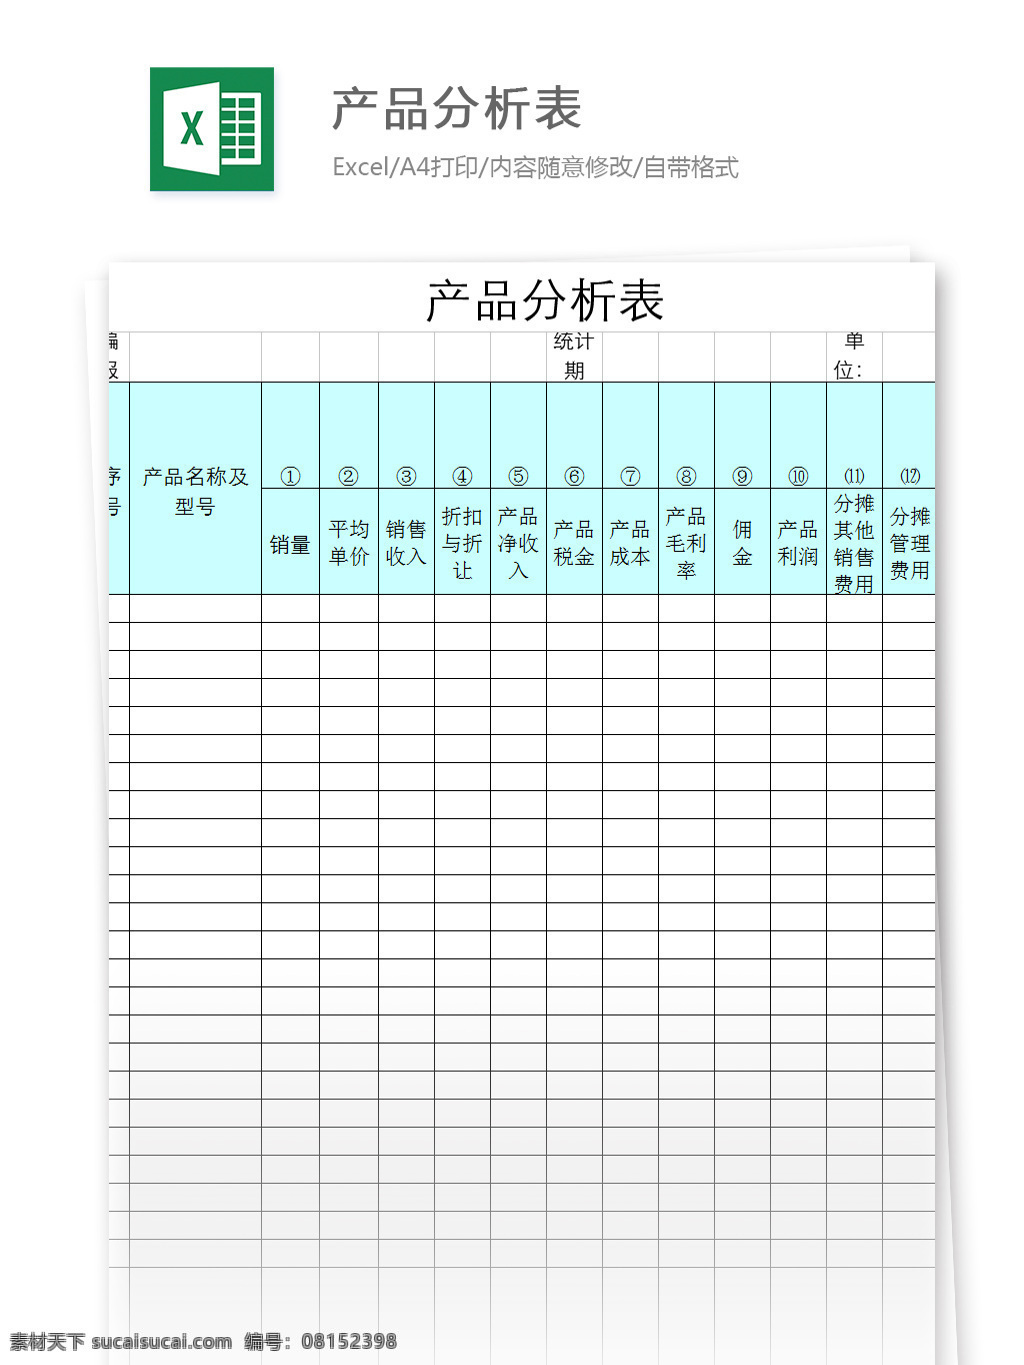 产品 分析 表 excel 模板 表格模板 图表 表格设计 表格